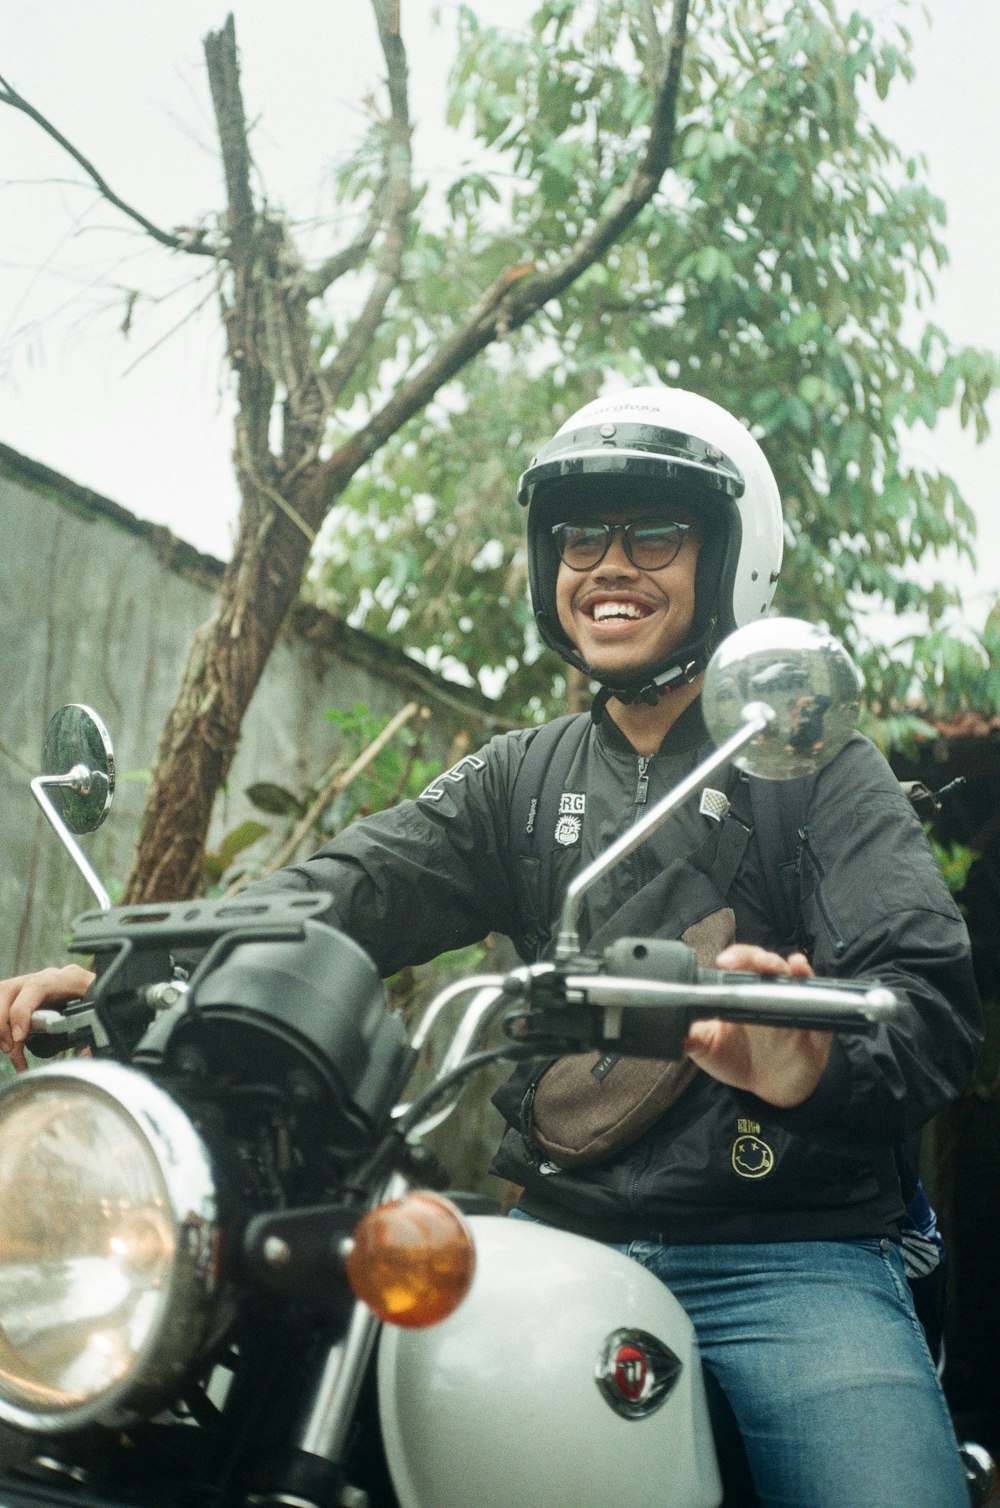 homme en veste en cuir noir portant un casque conduisant une moto pendant la journée